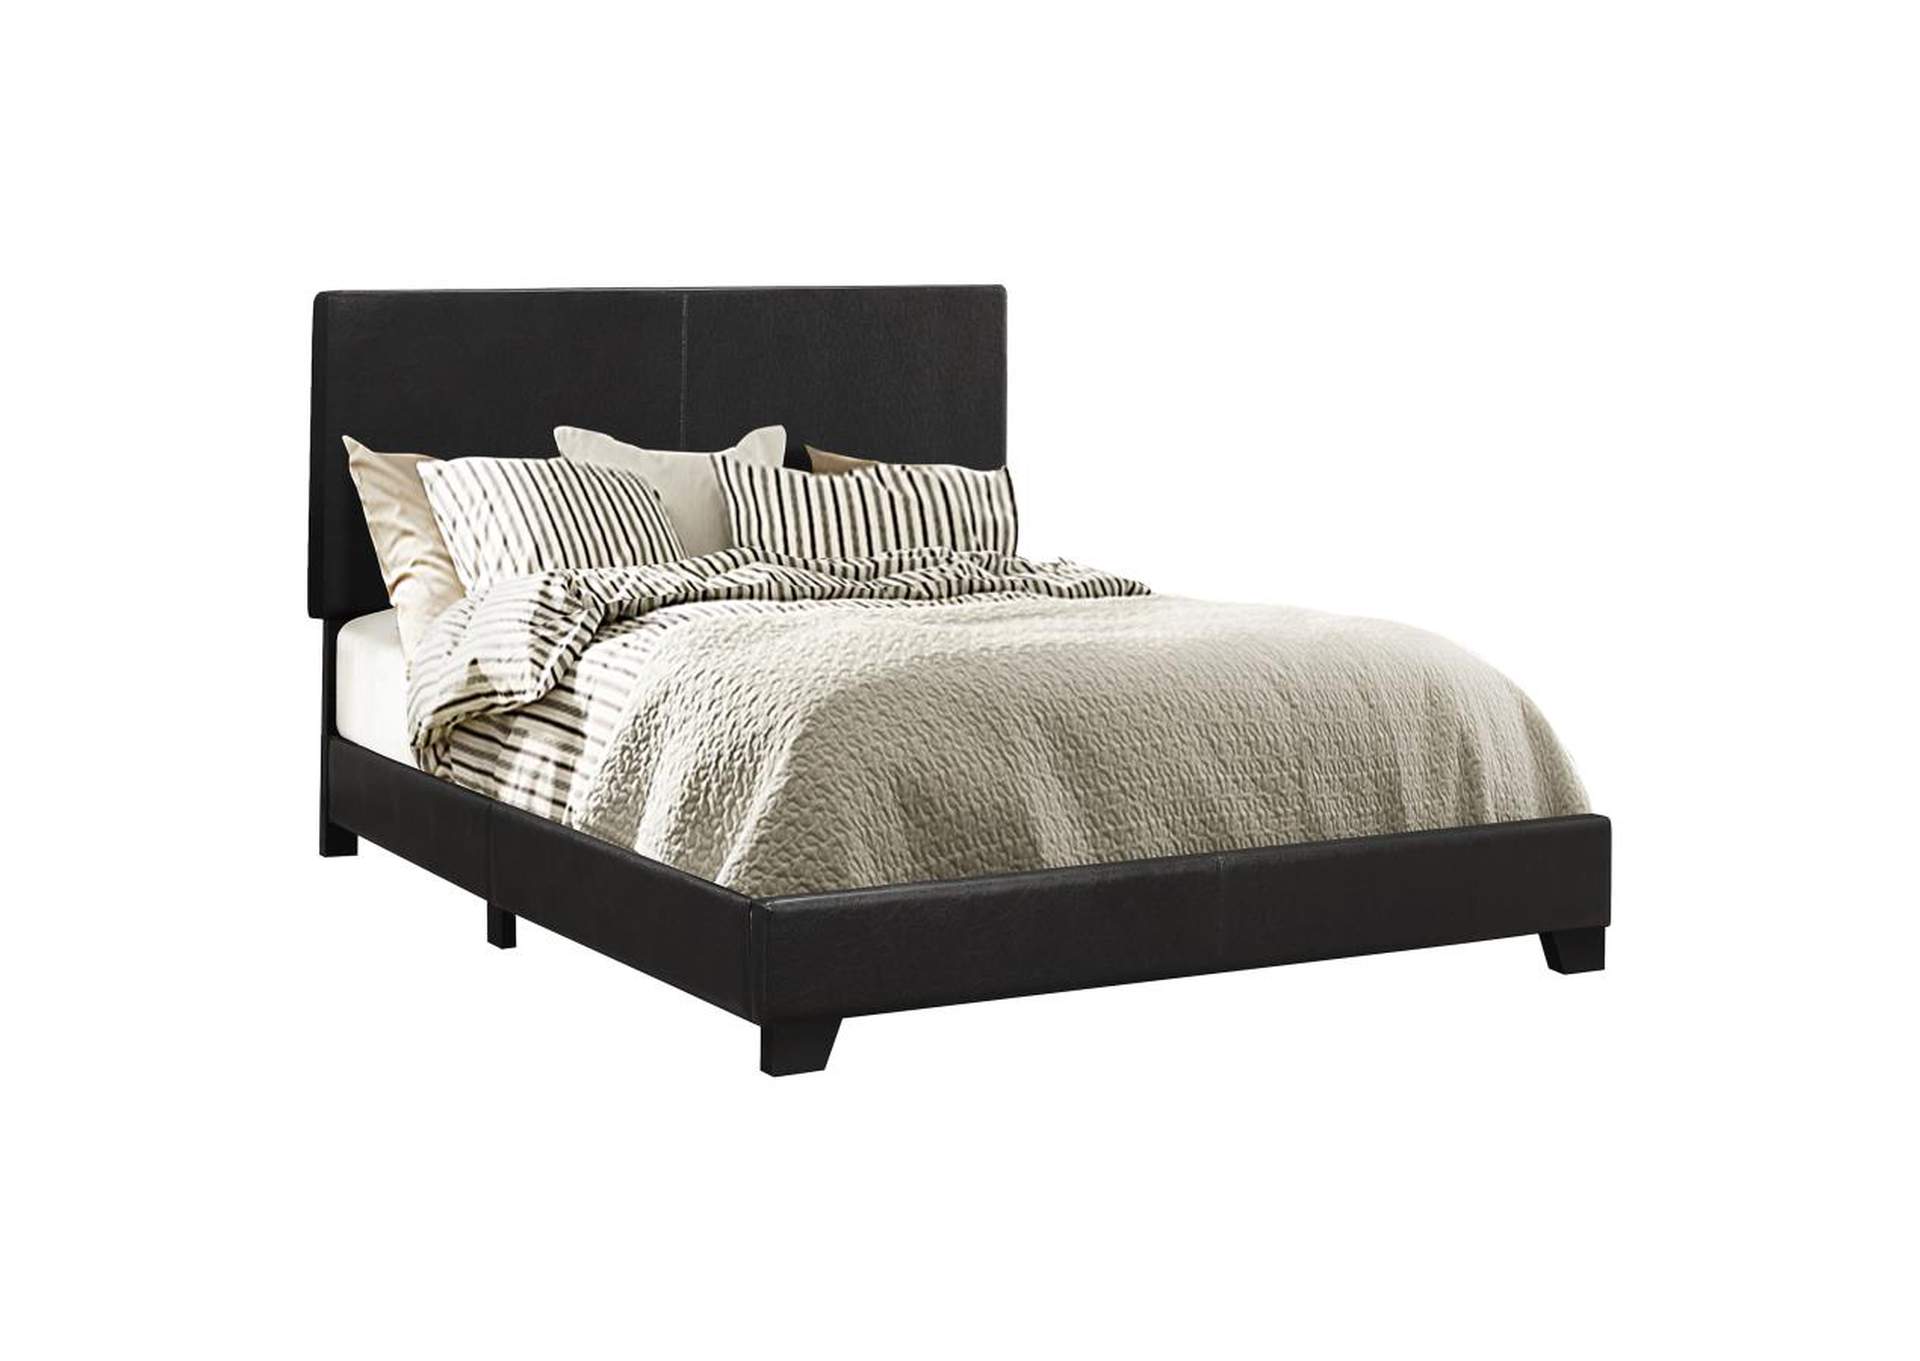 Dorian Upholstered Eastern King Bed Black,Coaster Furniture